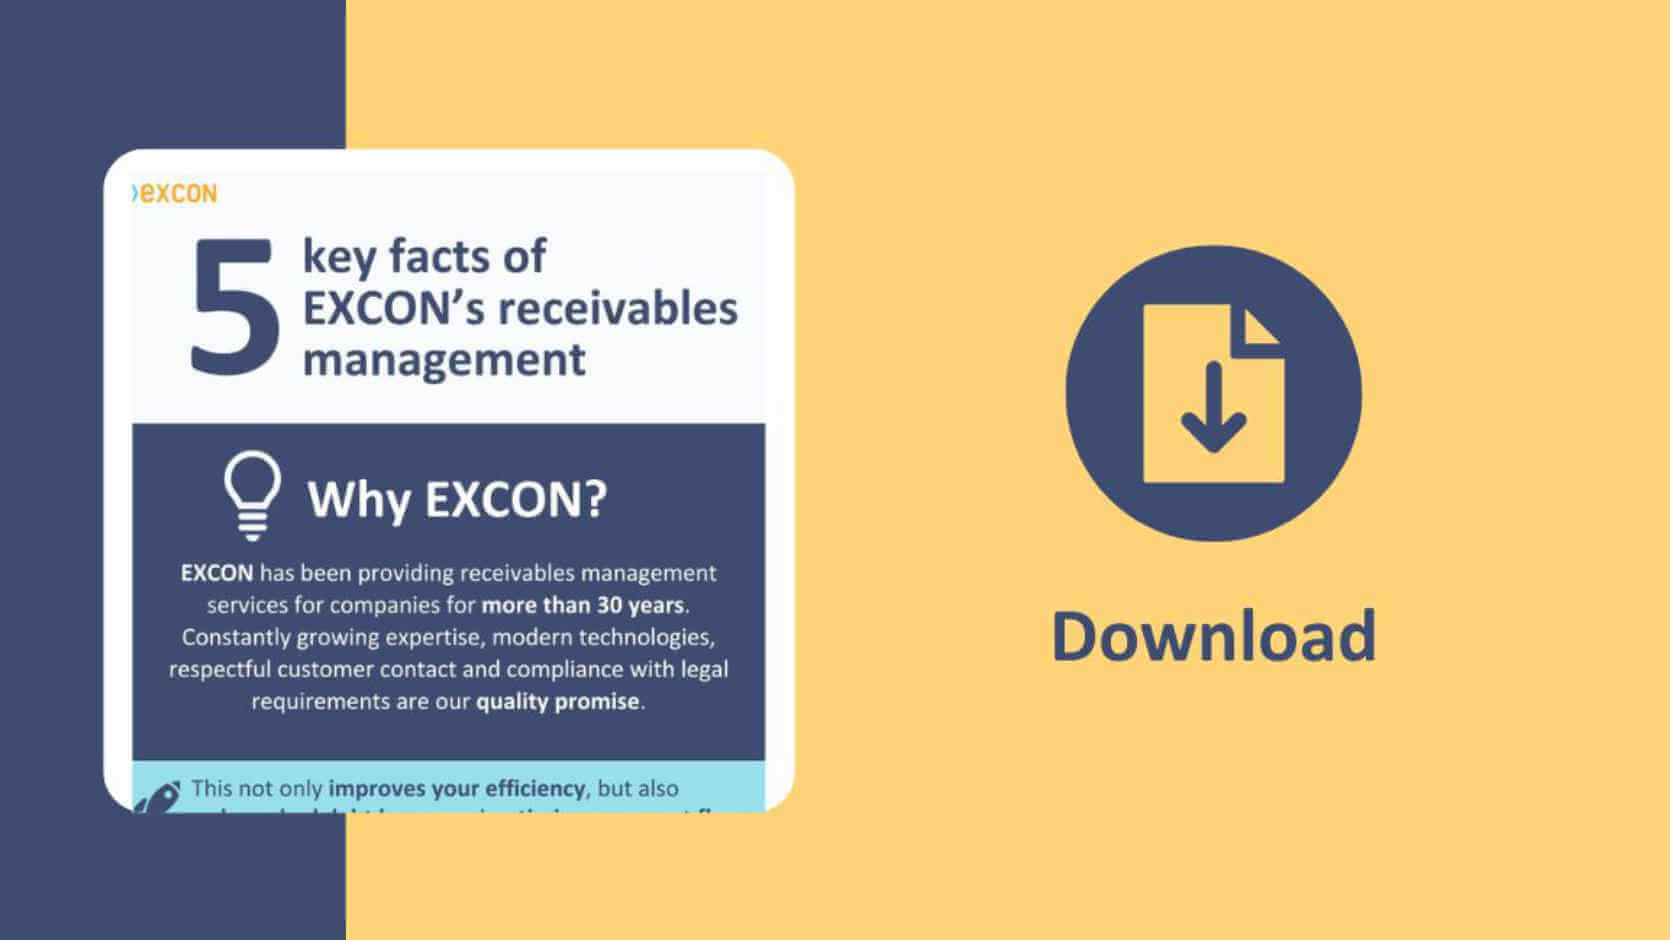 Download englischsprachige Infografik zum Forderungsmanagement von EXCON